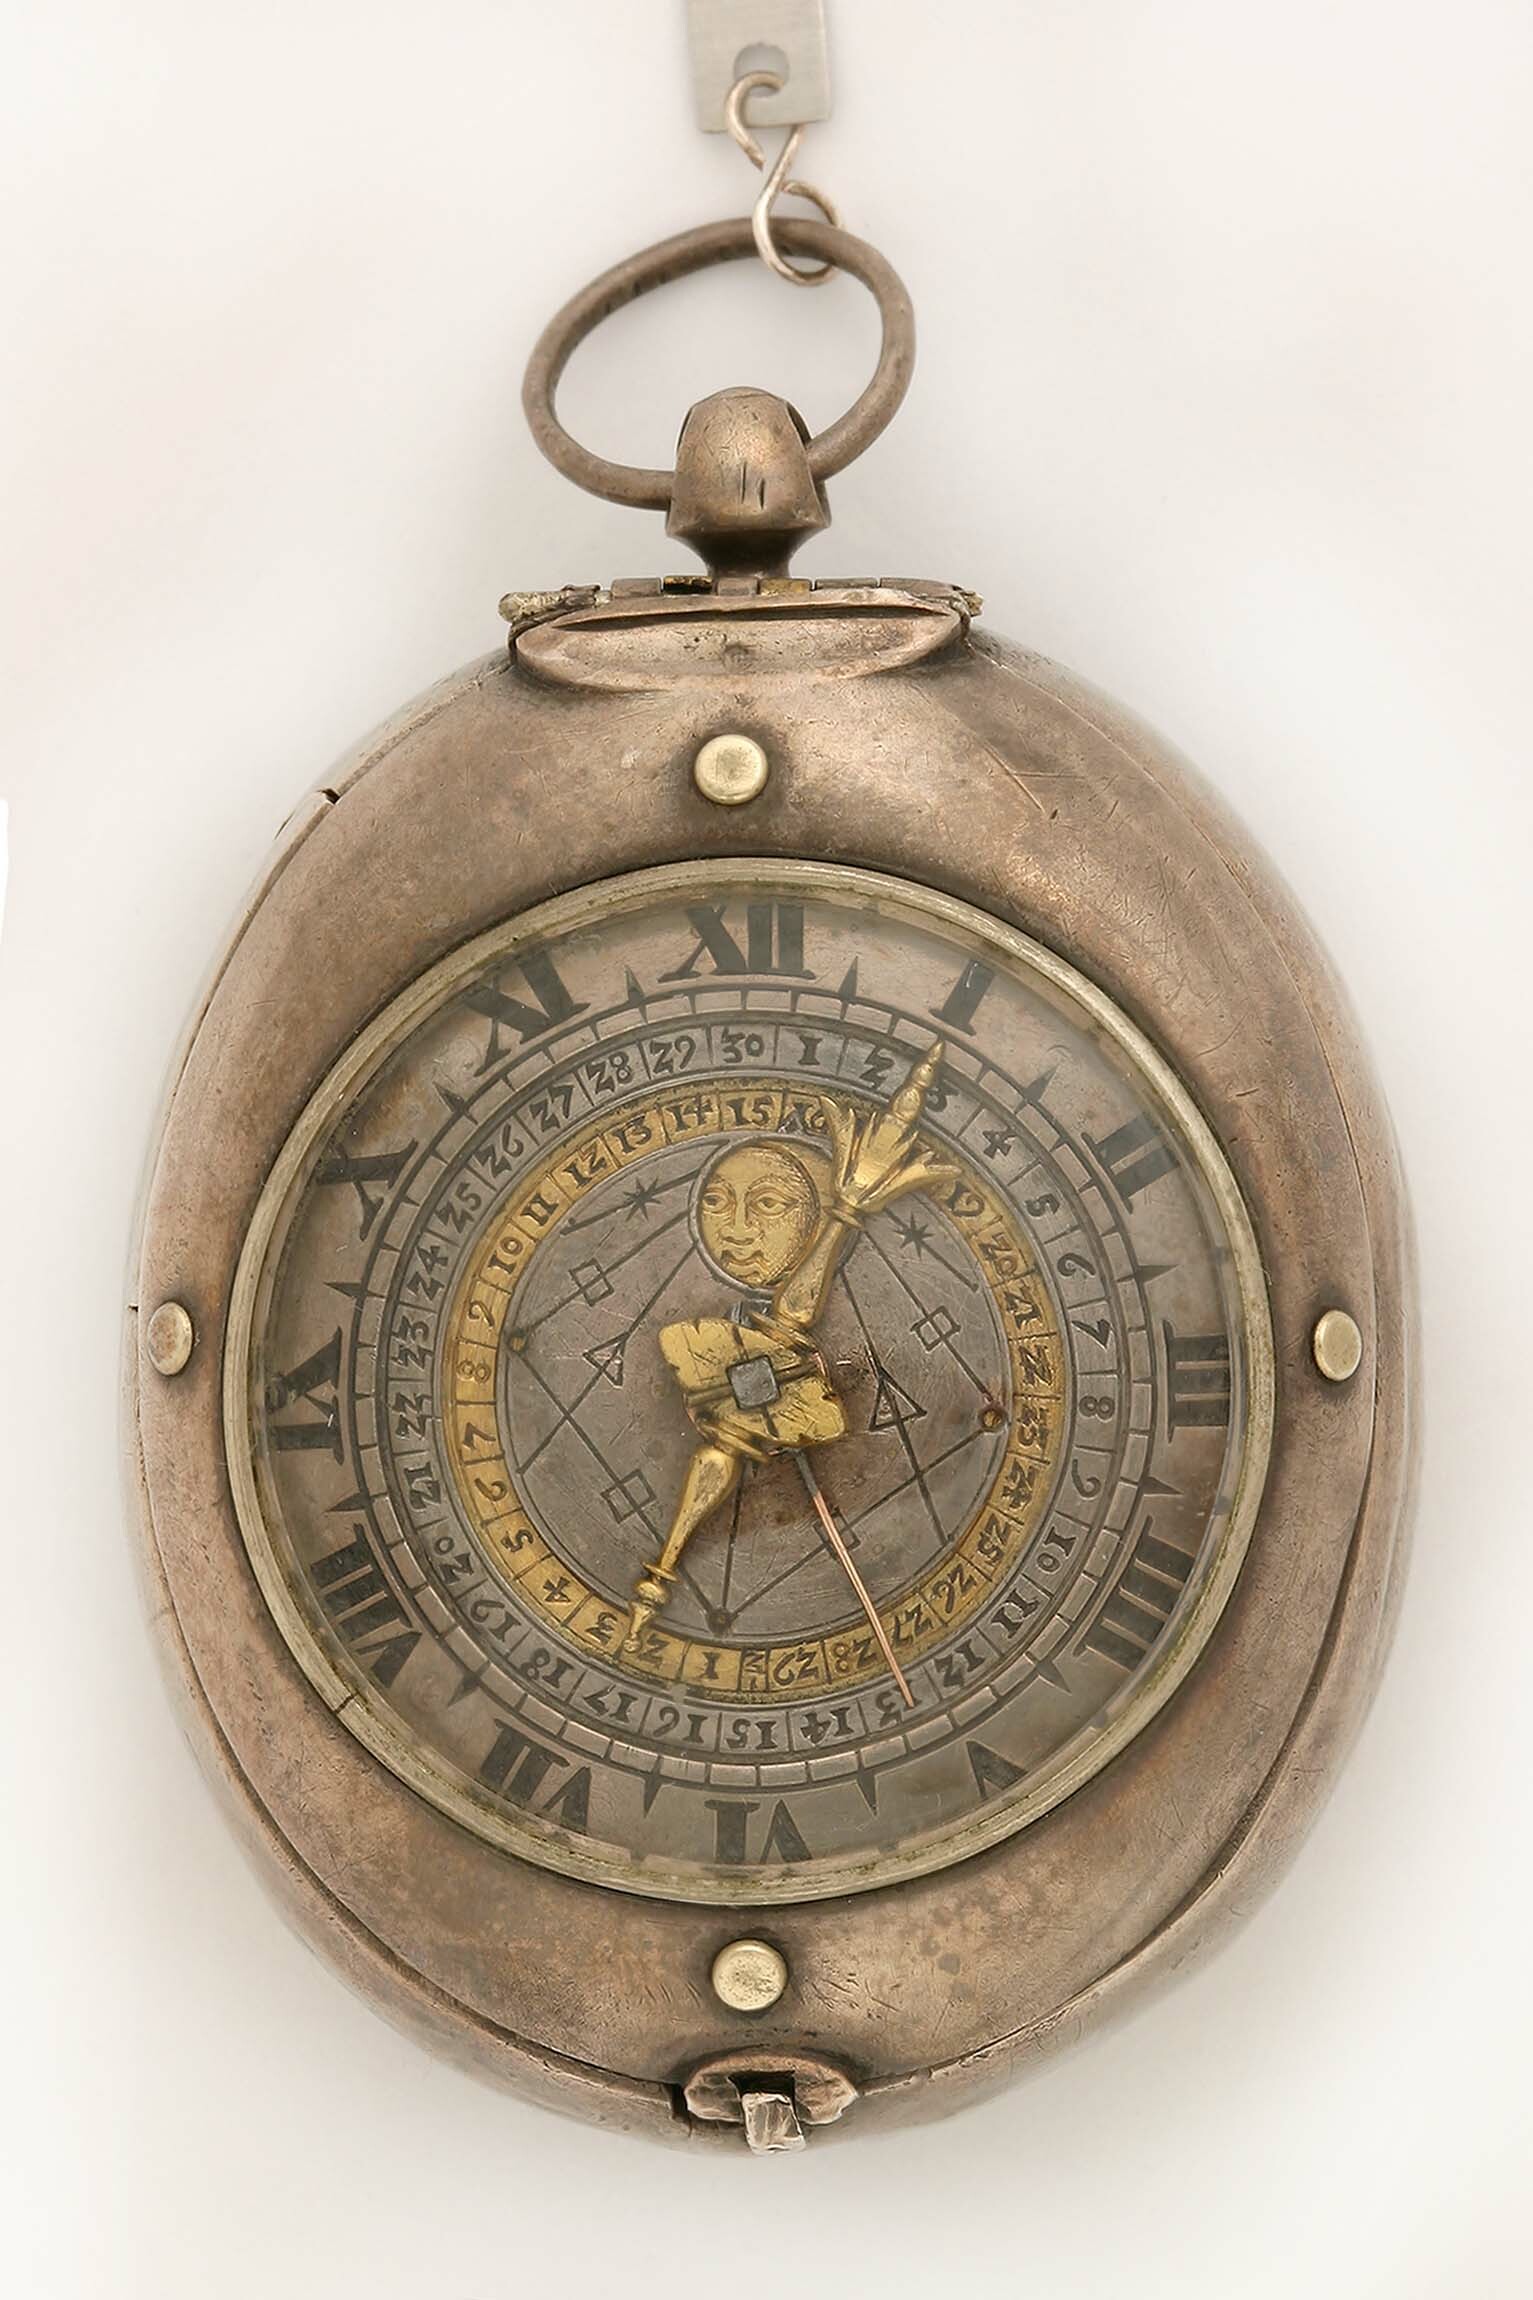 Halsuhr, Johann Sayller, Ulm, um 1650 (Deutsches Uhrenmuseum CC BY-SA)